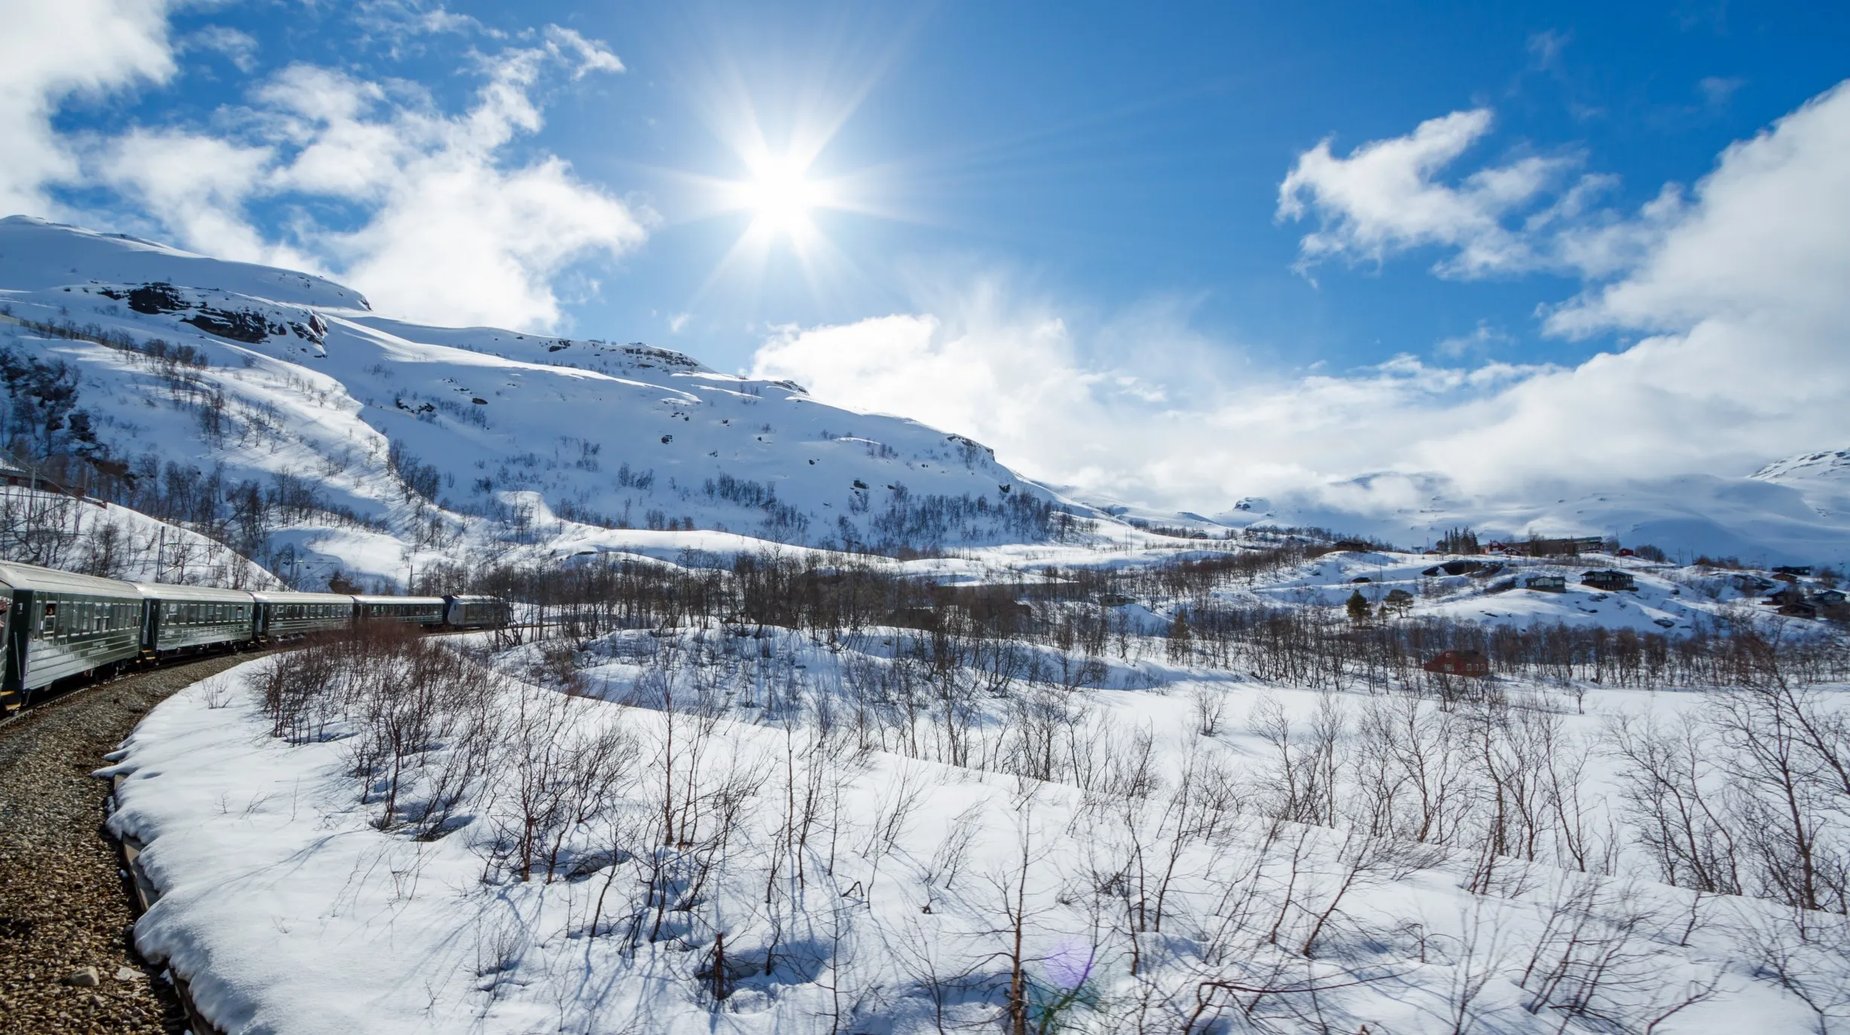 Noorwegen - Flamsbana winter